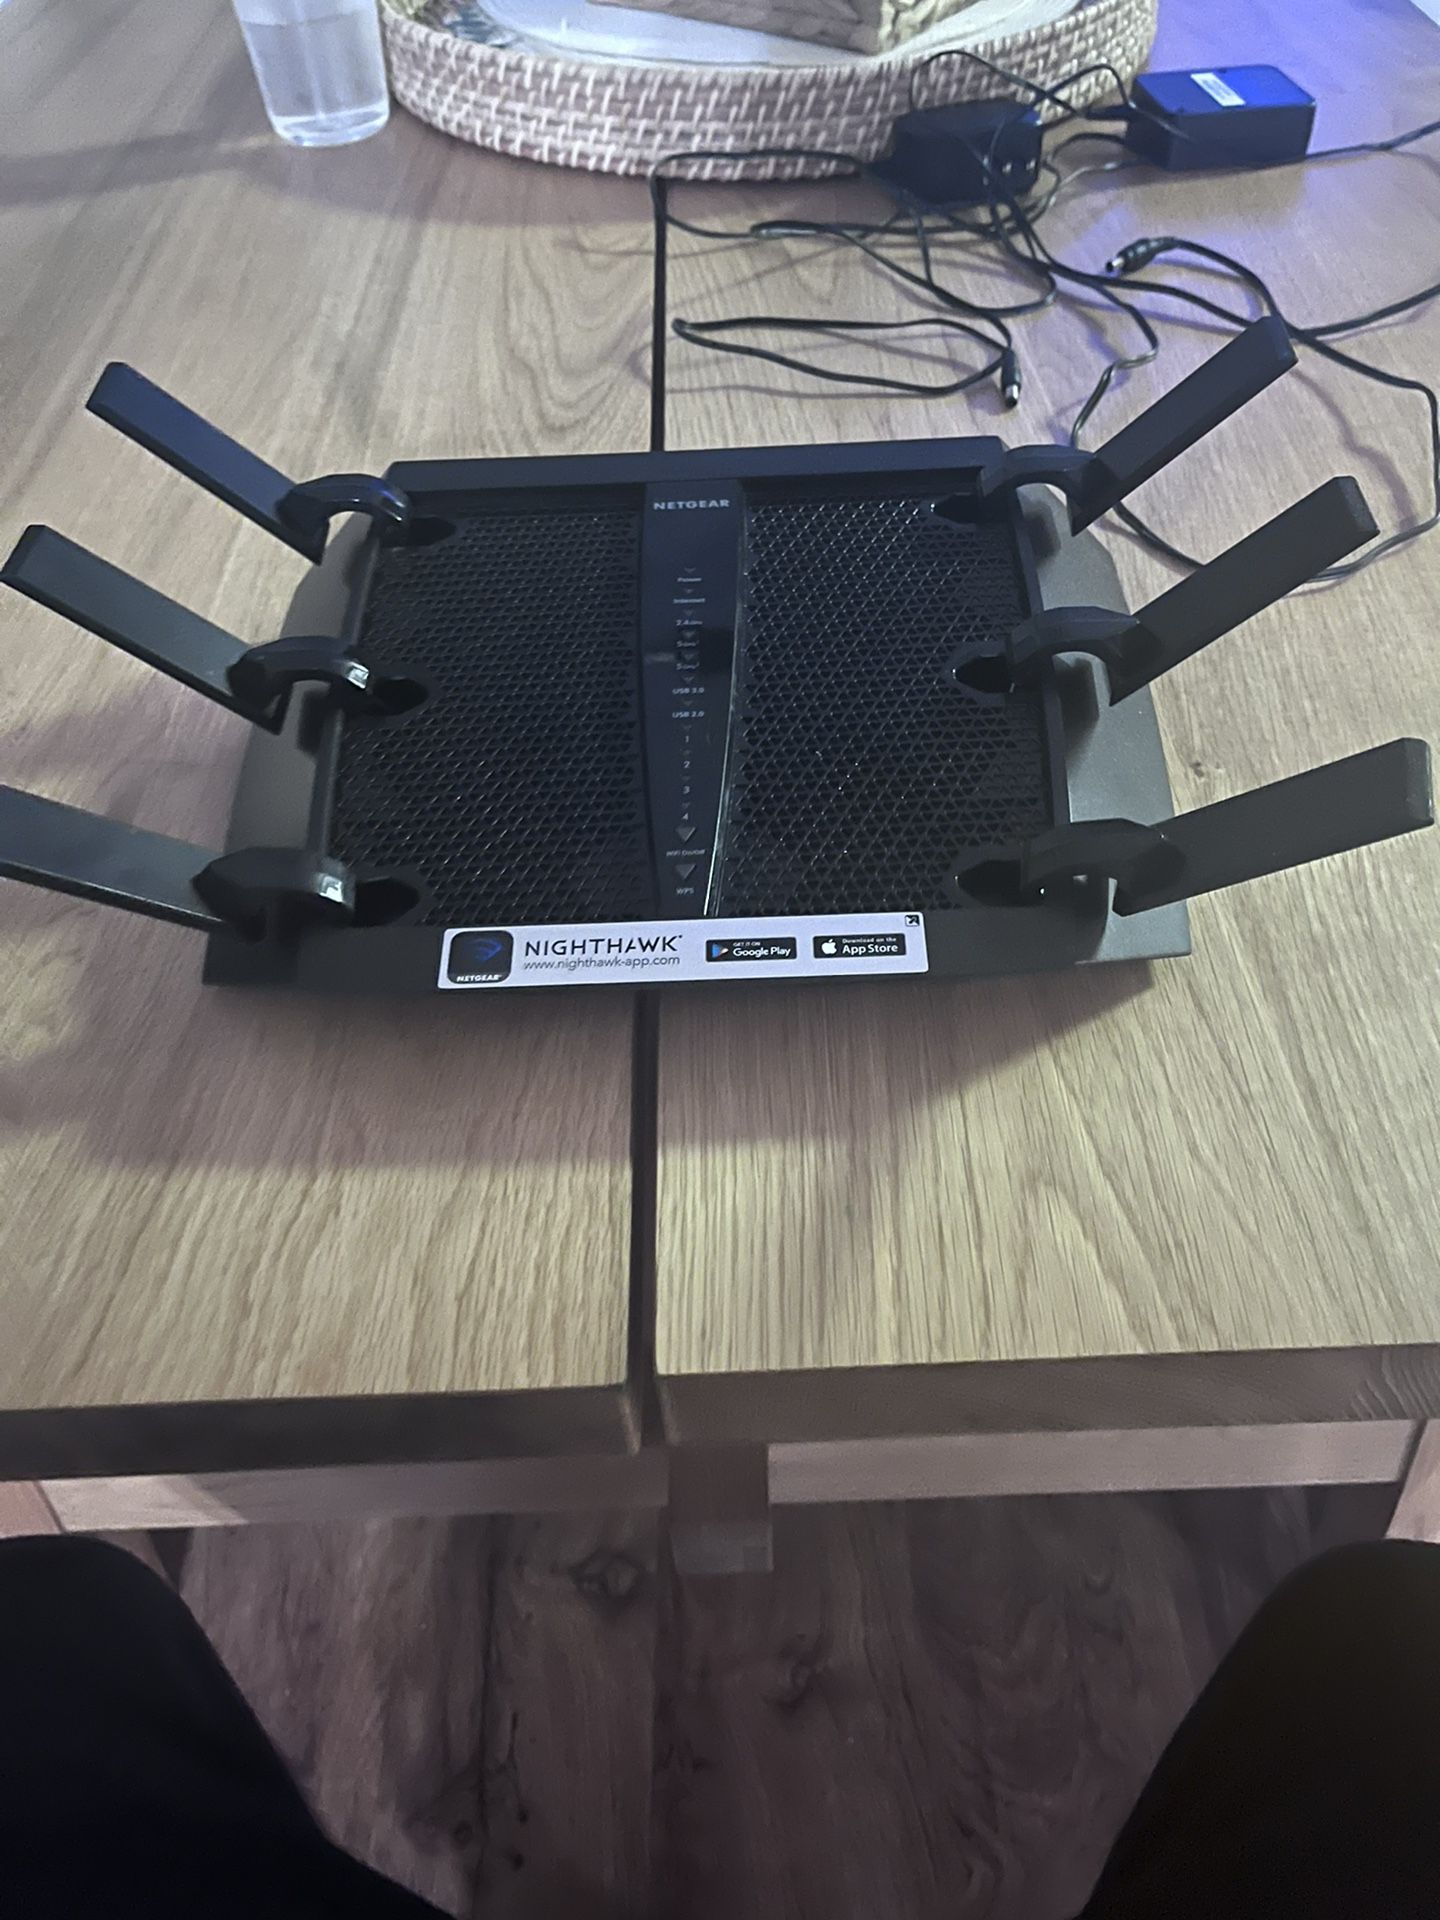 NIGHTHAWK NETGEAR router